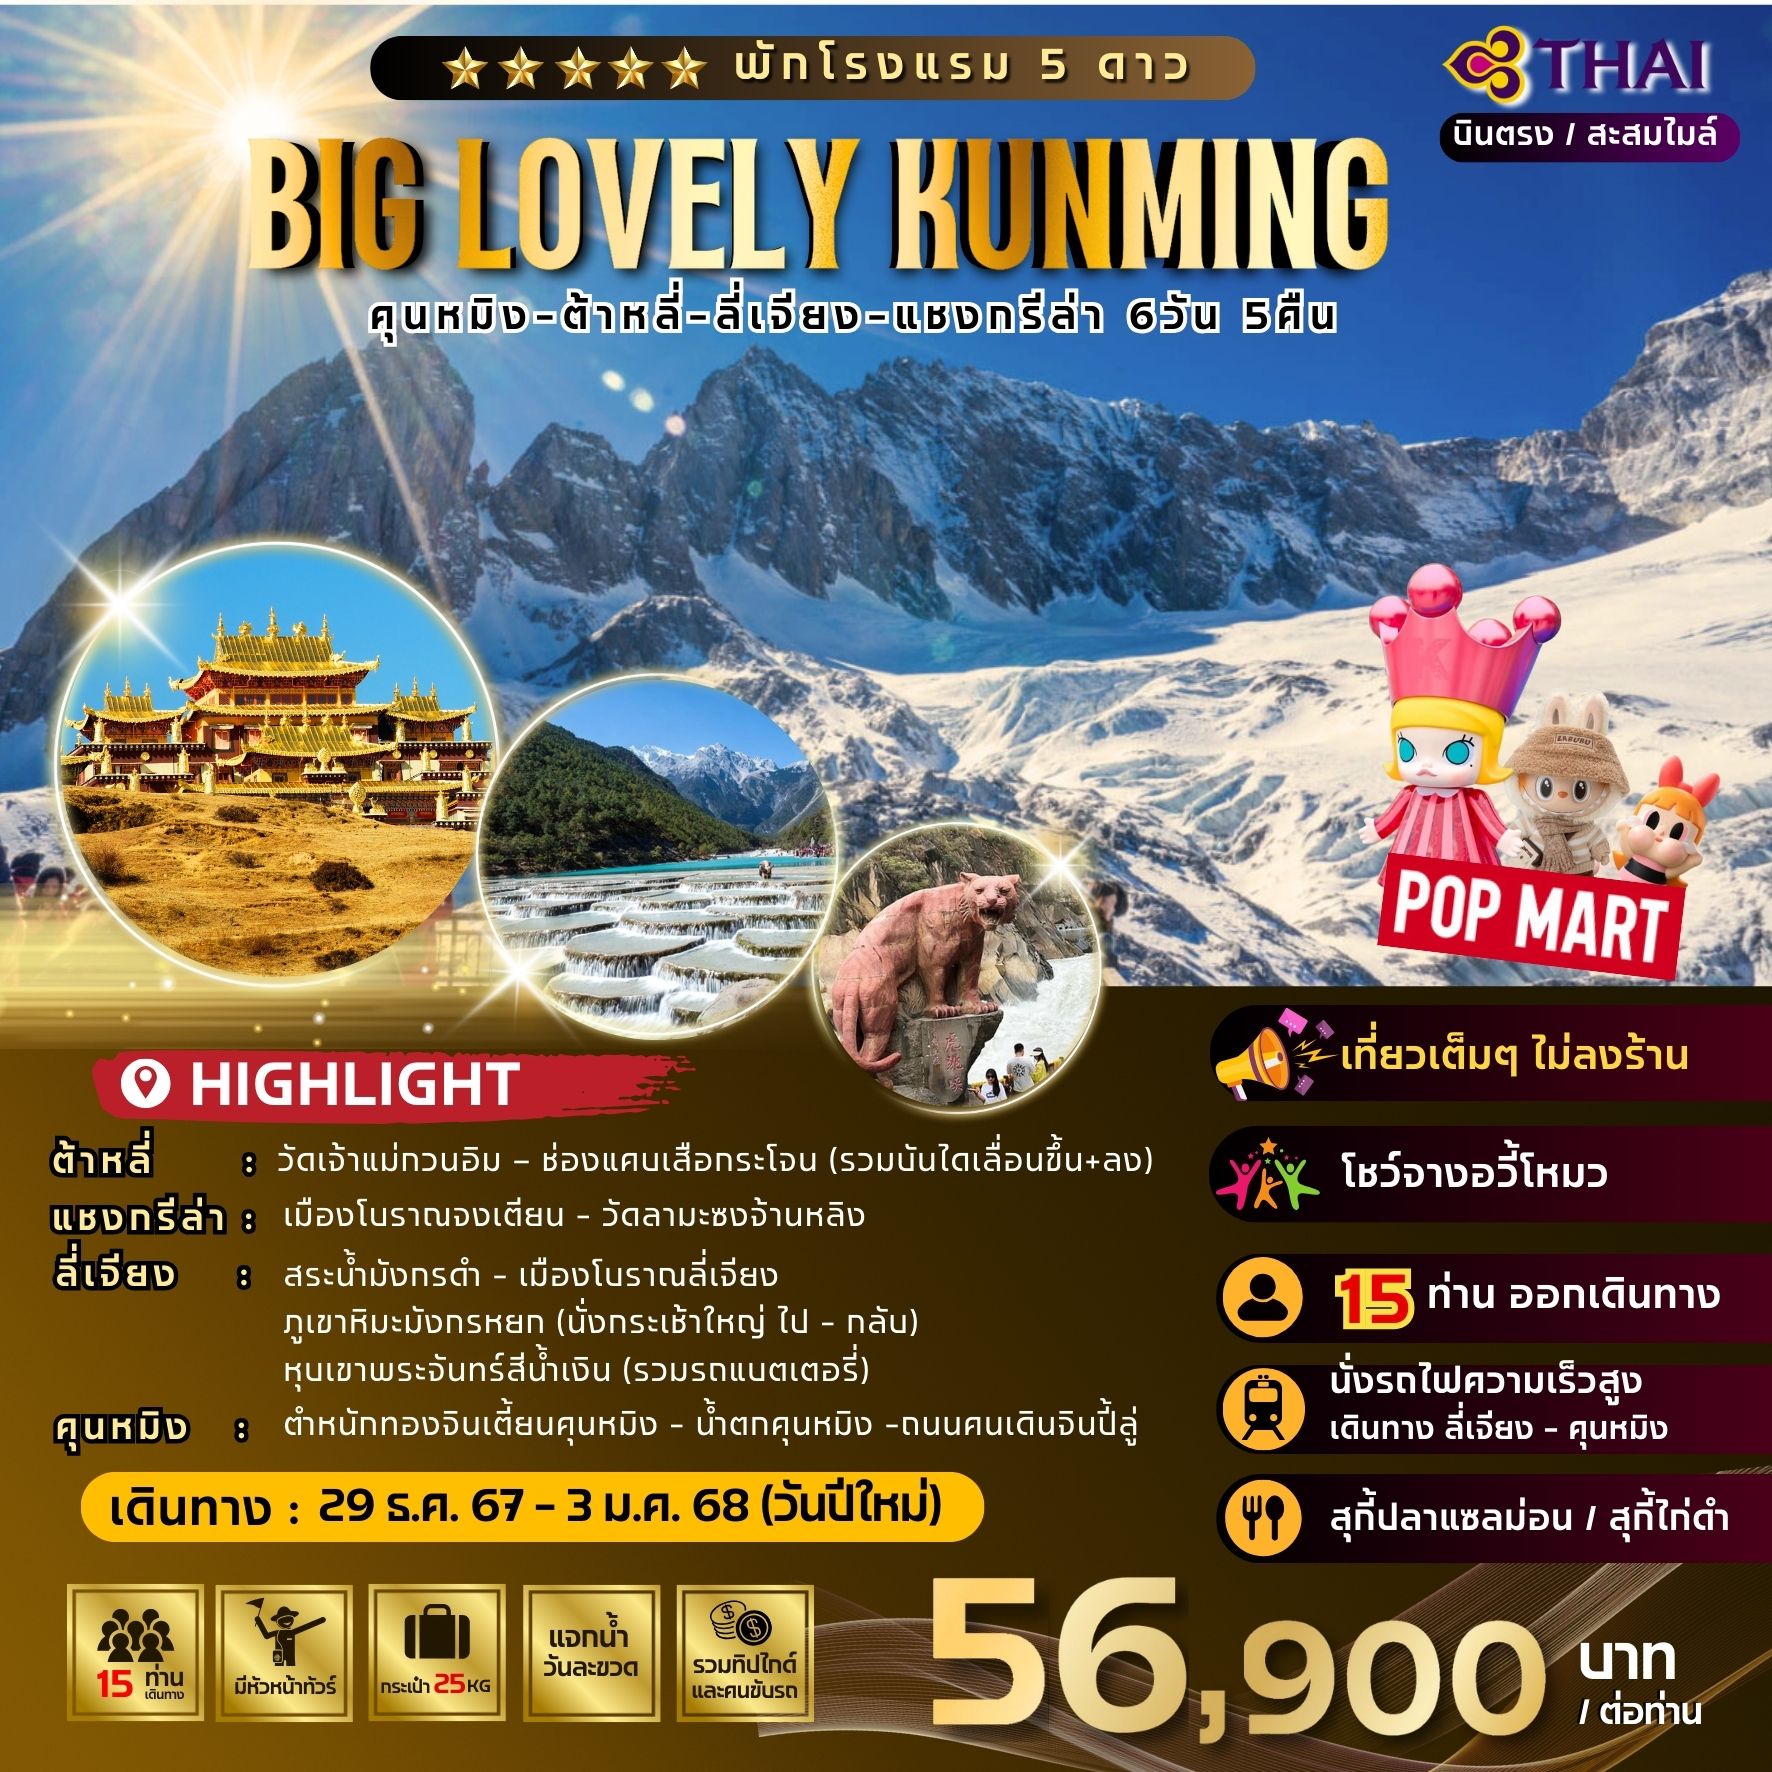 ทัวร์จีน BIG LOVELY KUMMING Dali Lijiang Shangri-La 6วัน 5คืน (TG)